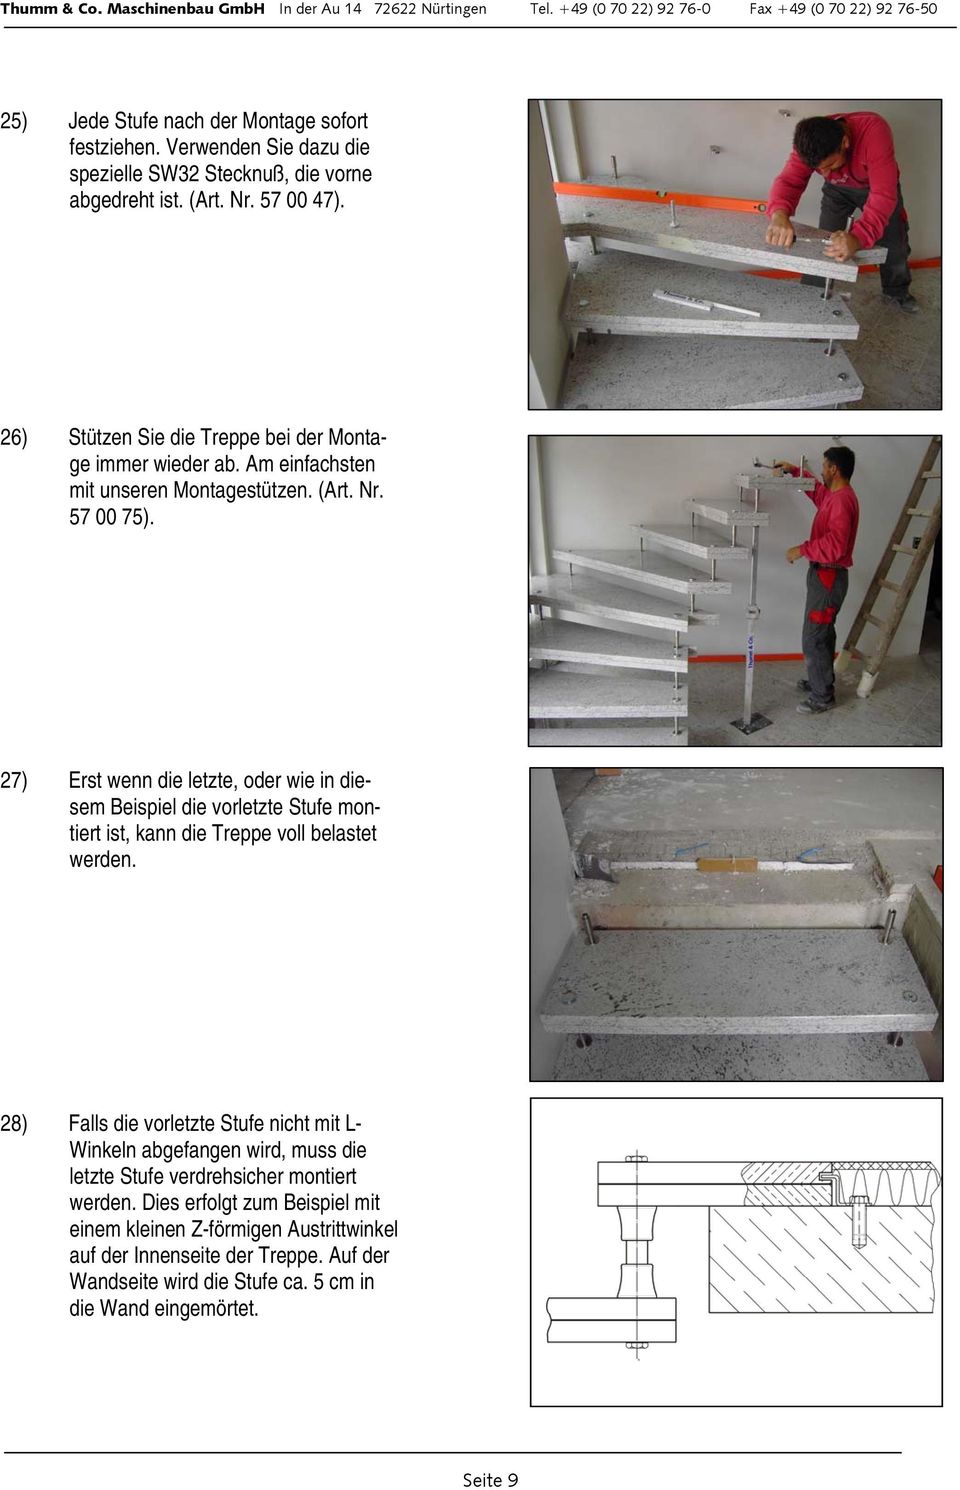 27) Erst wenn die letzte, oder wie in diesem Beispiel die vorletzte Stufe montiert ist, kann die Treppe voll belastet werden.